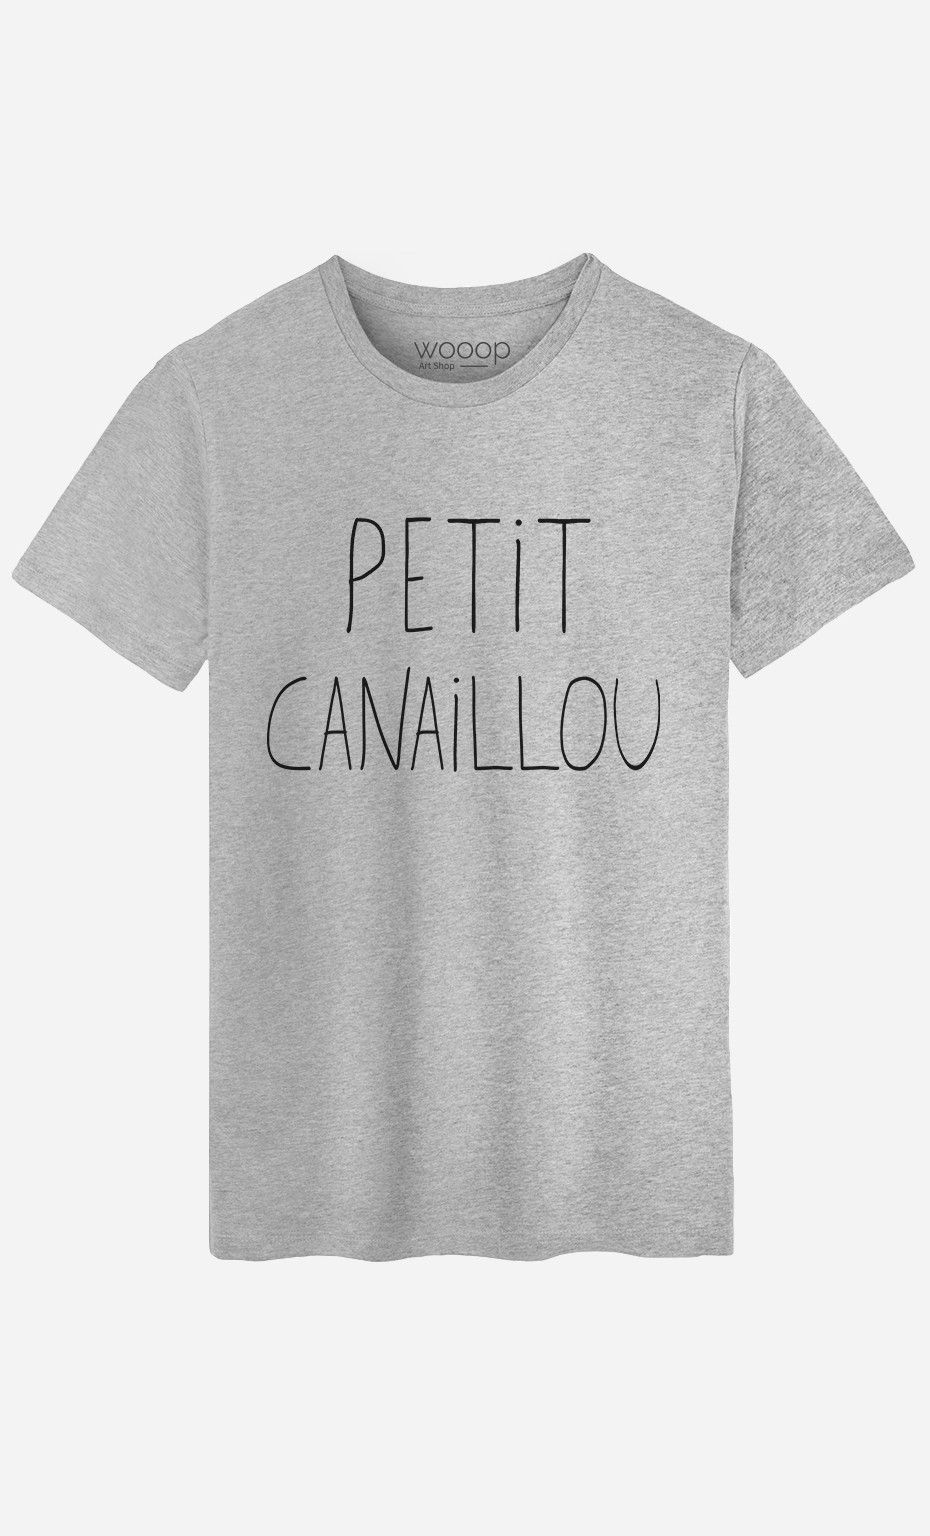 T-Shirt Homme Petit Canaillou